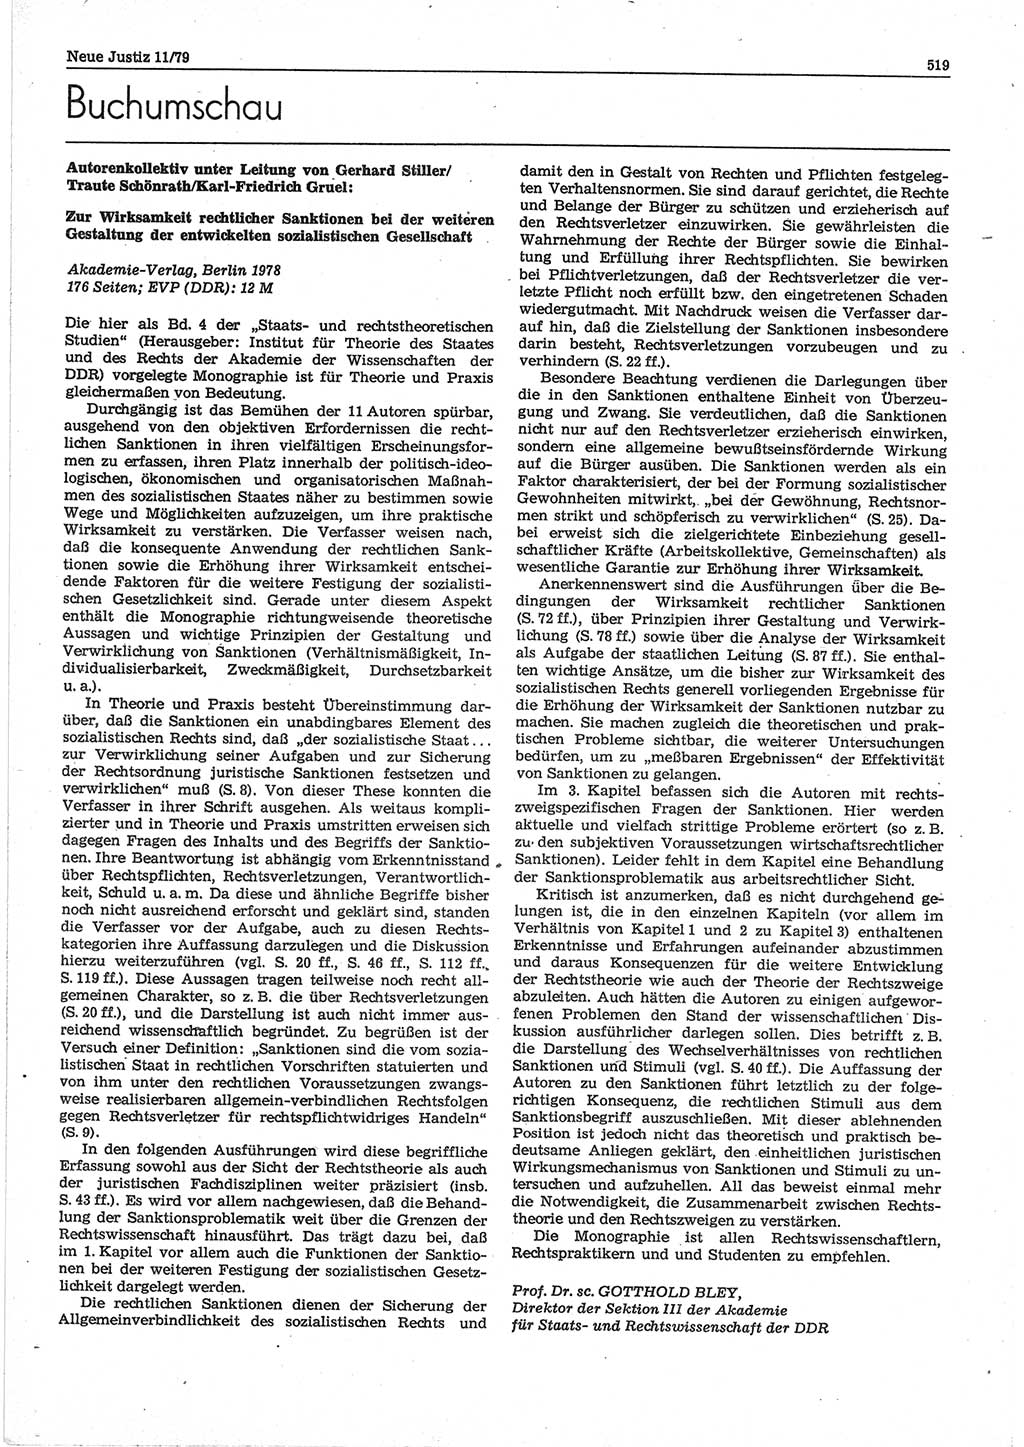 Neue Justiz (NJ), Zeitschrift für sozialistisches Recht und Gesetzlichkeit [Deutsche Demokratische Republik (DDR)], 33. Jahrgang 1979, Seite 519 (NJ DDR 1979, S. 519)